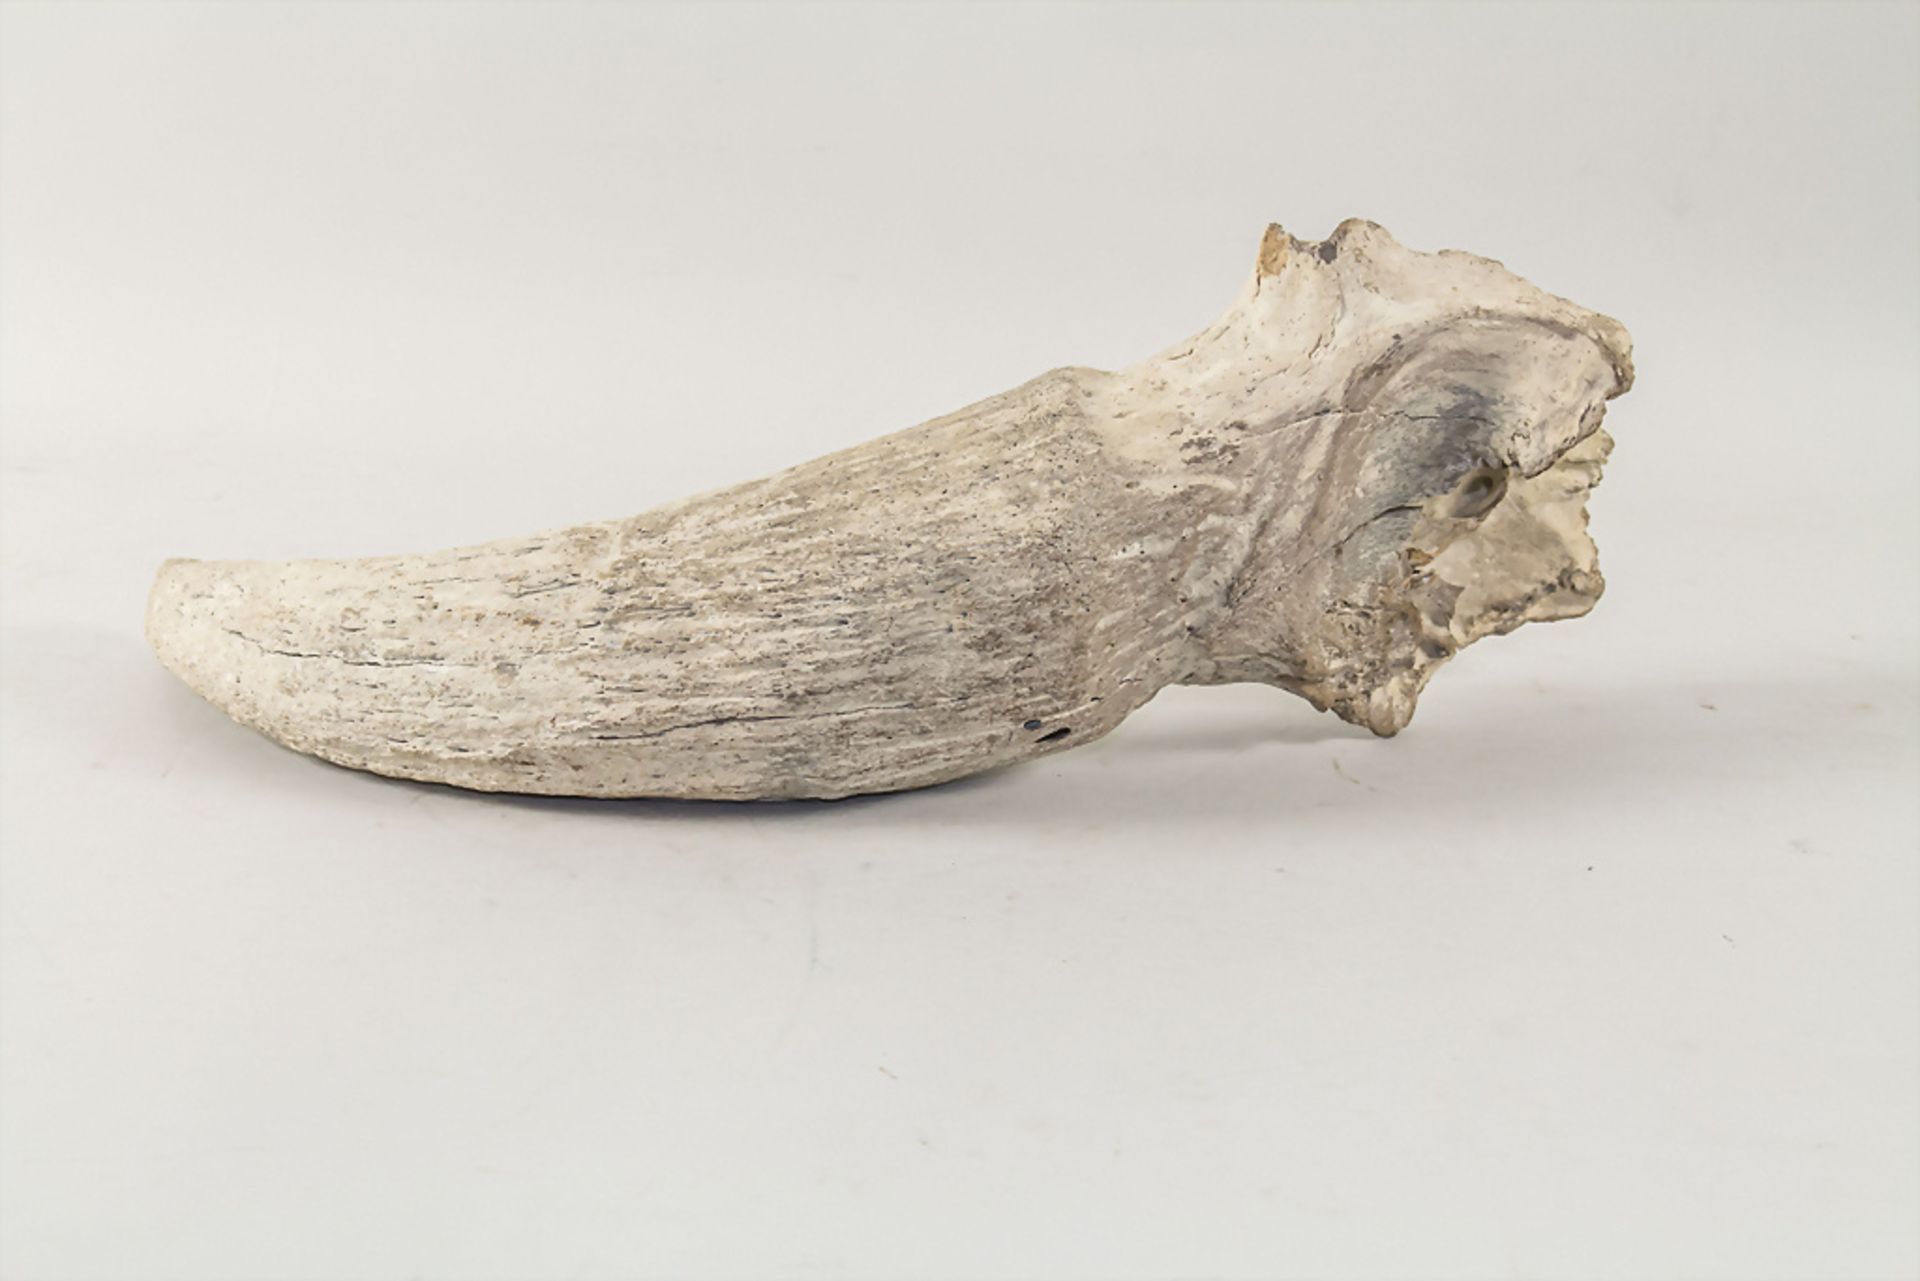 Versteinertes Nashornhorn / A fossilized rhino horn - Image 3 of 4